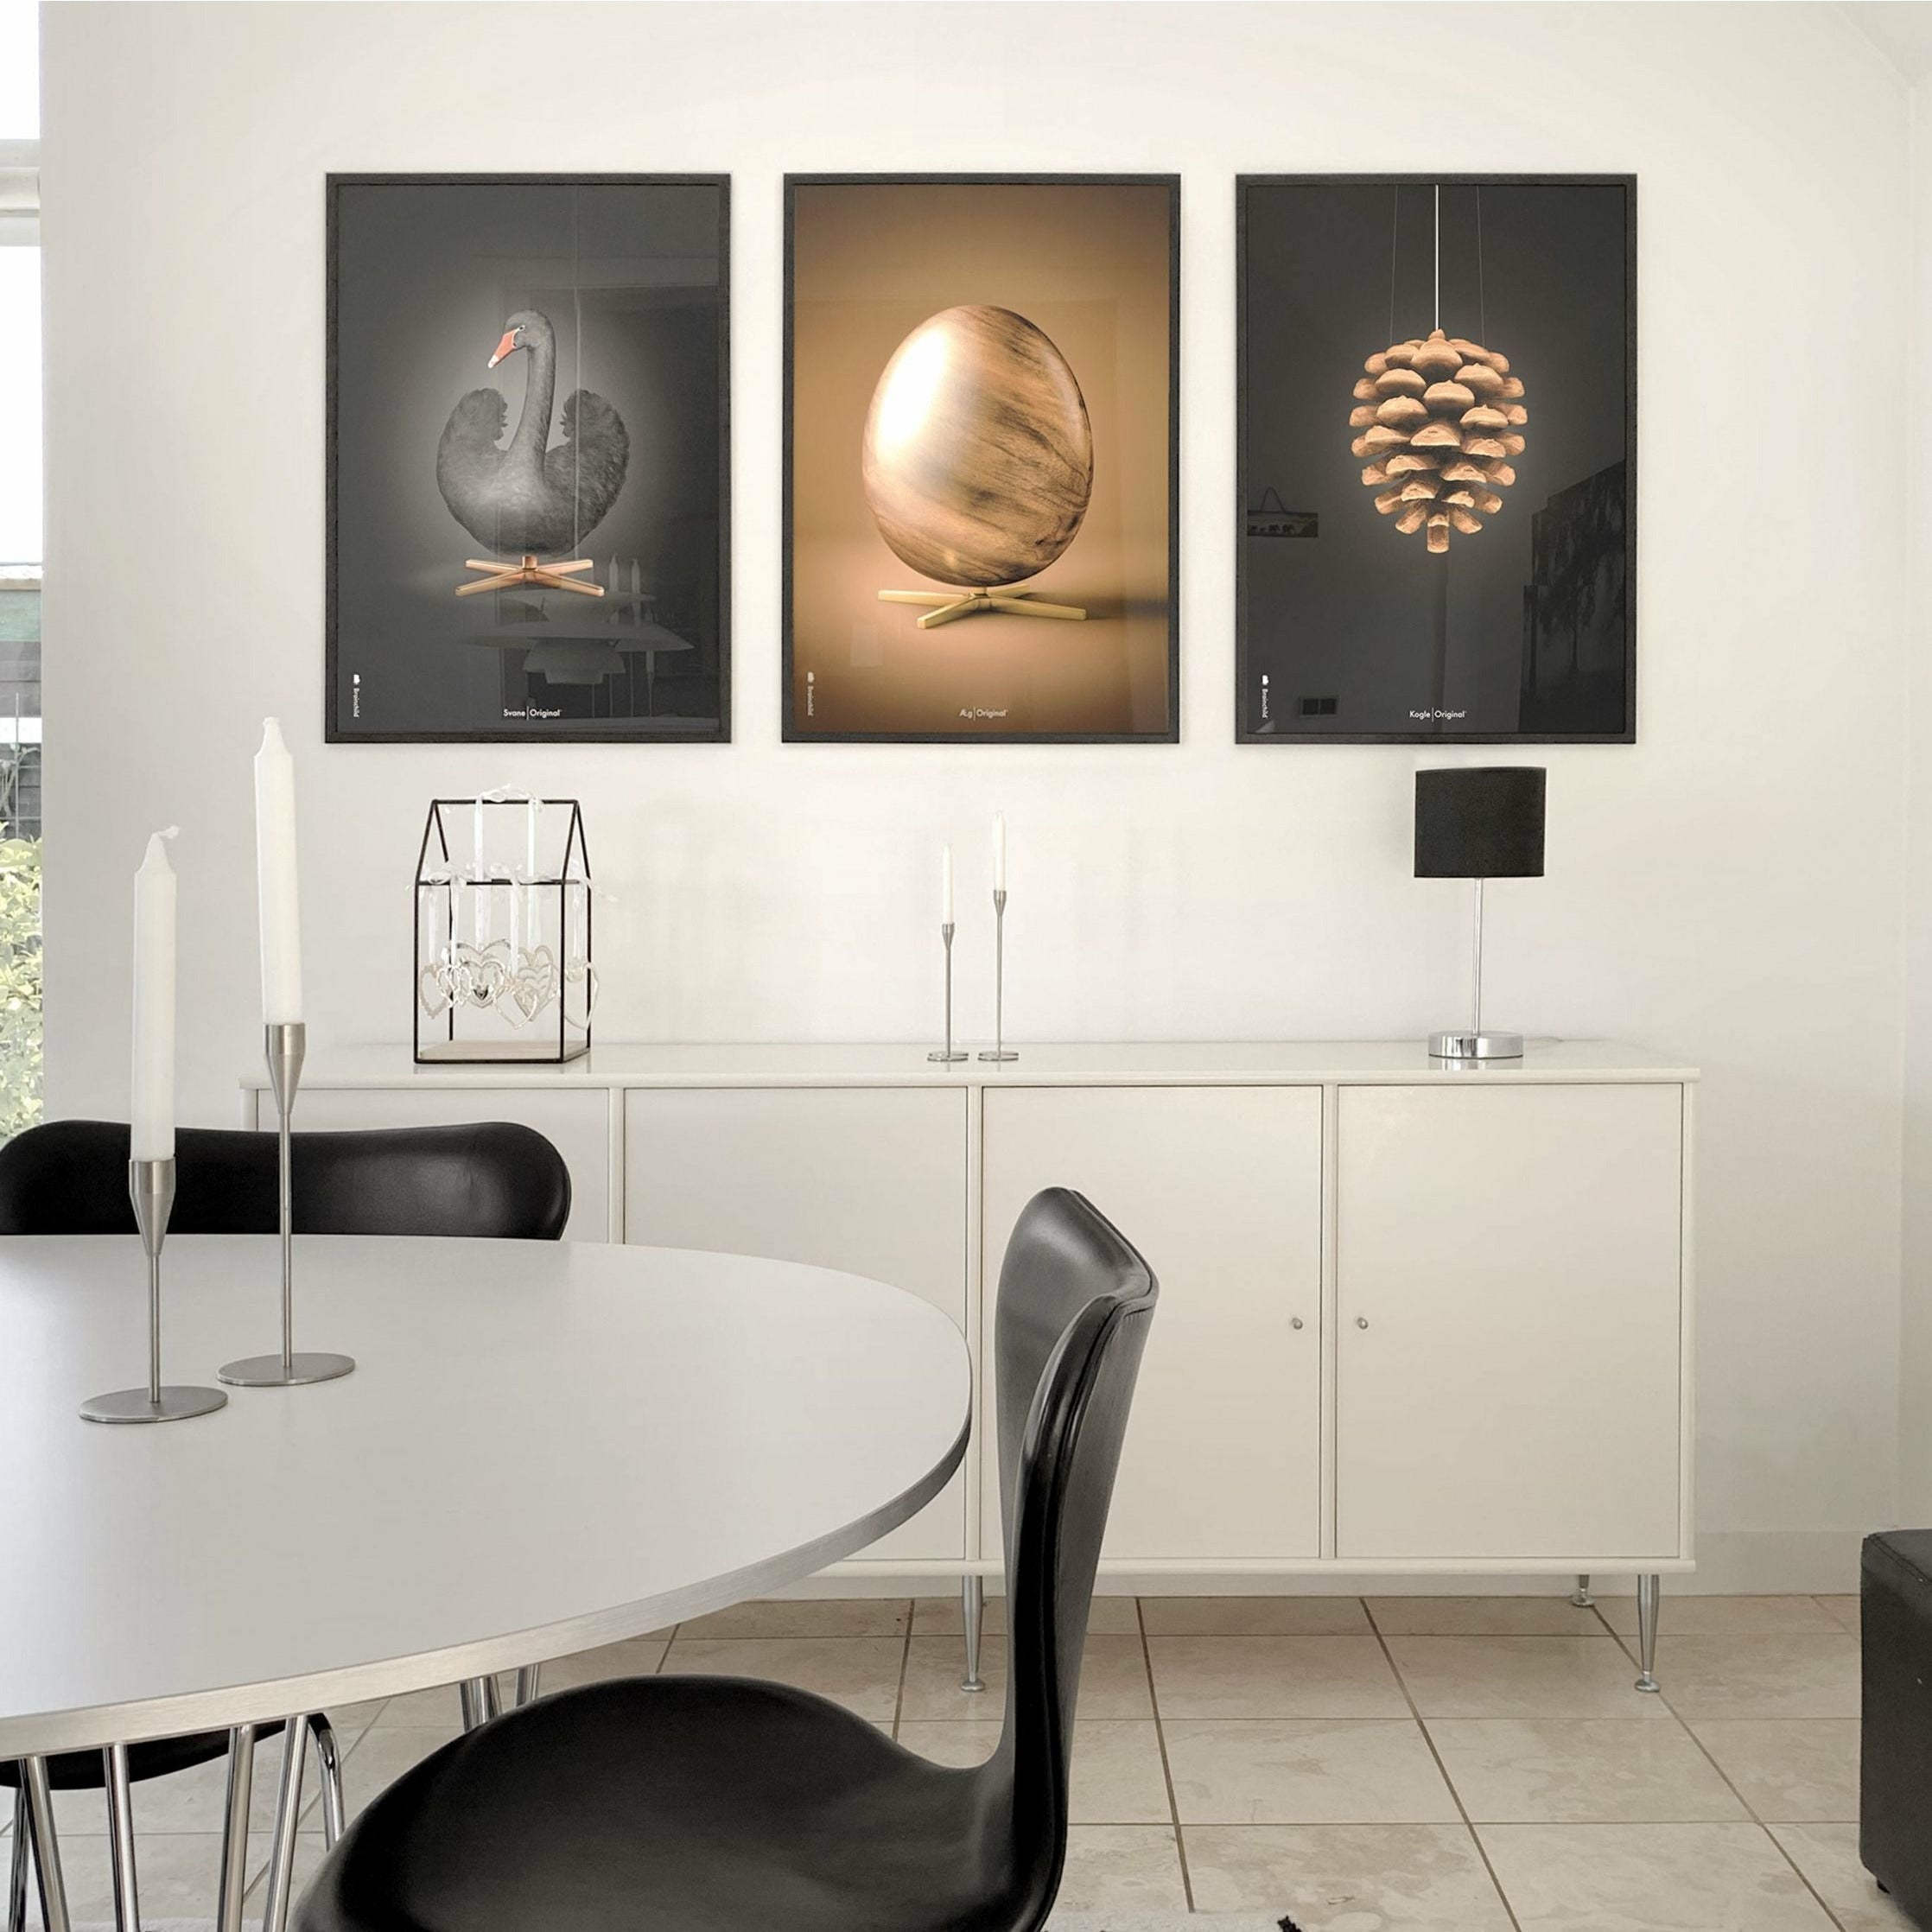 Poster classico Swan Brainchild senza fotogramma 30 x40 cm, sfondo nero/nero